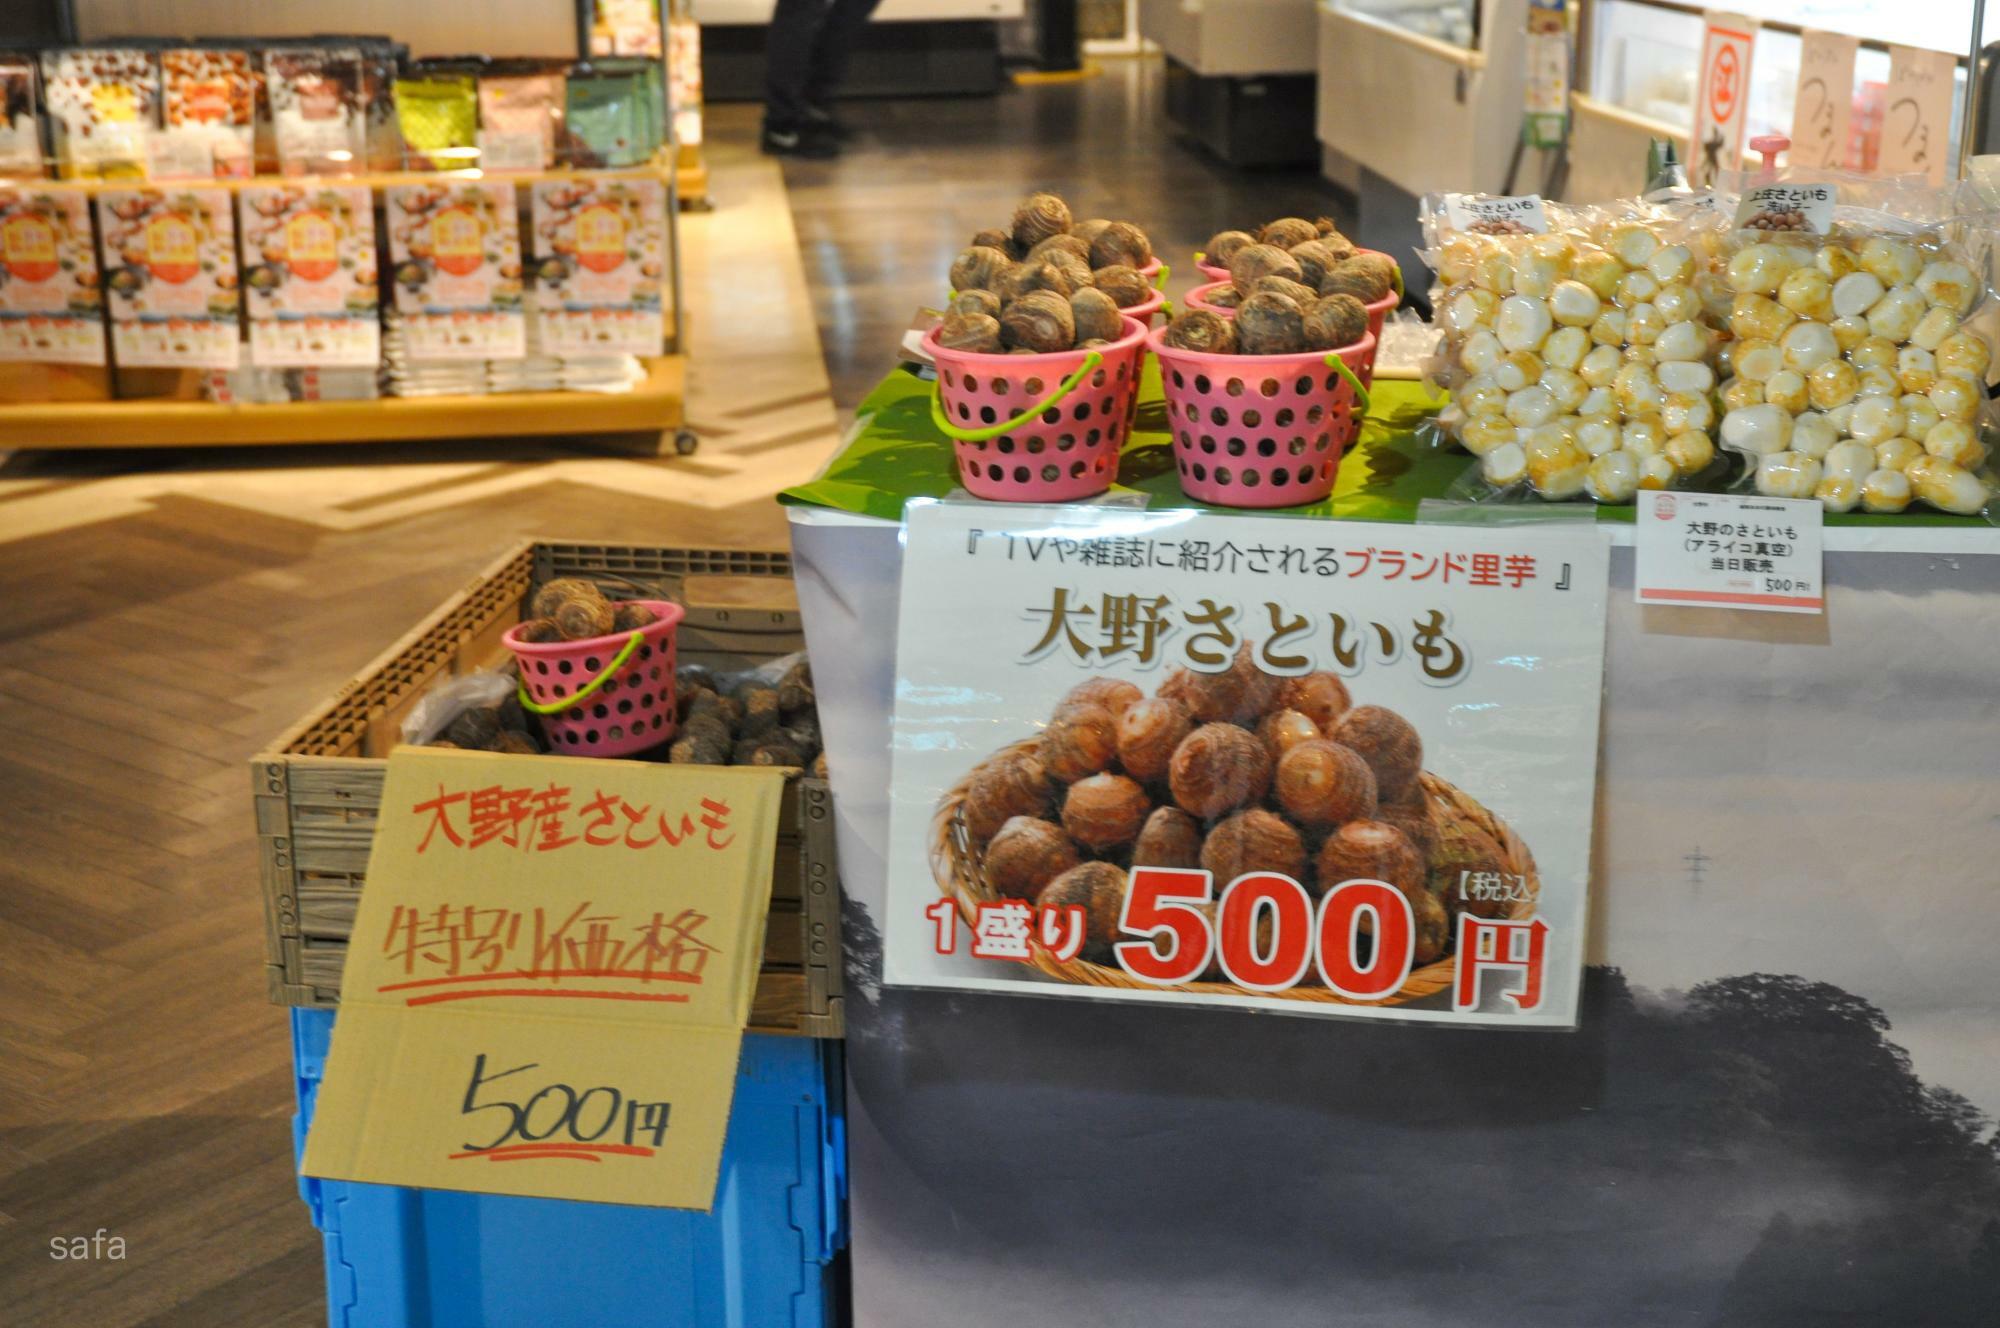 大野名産里芋の販売、お米量り売りは5日、10日限定。無くなり次第終了。